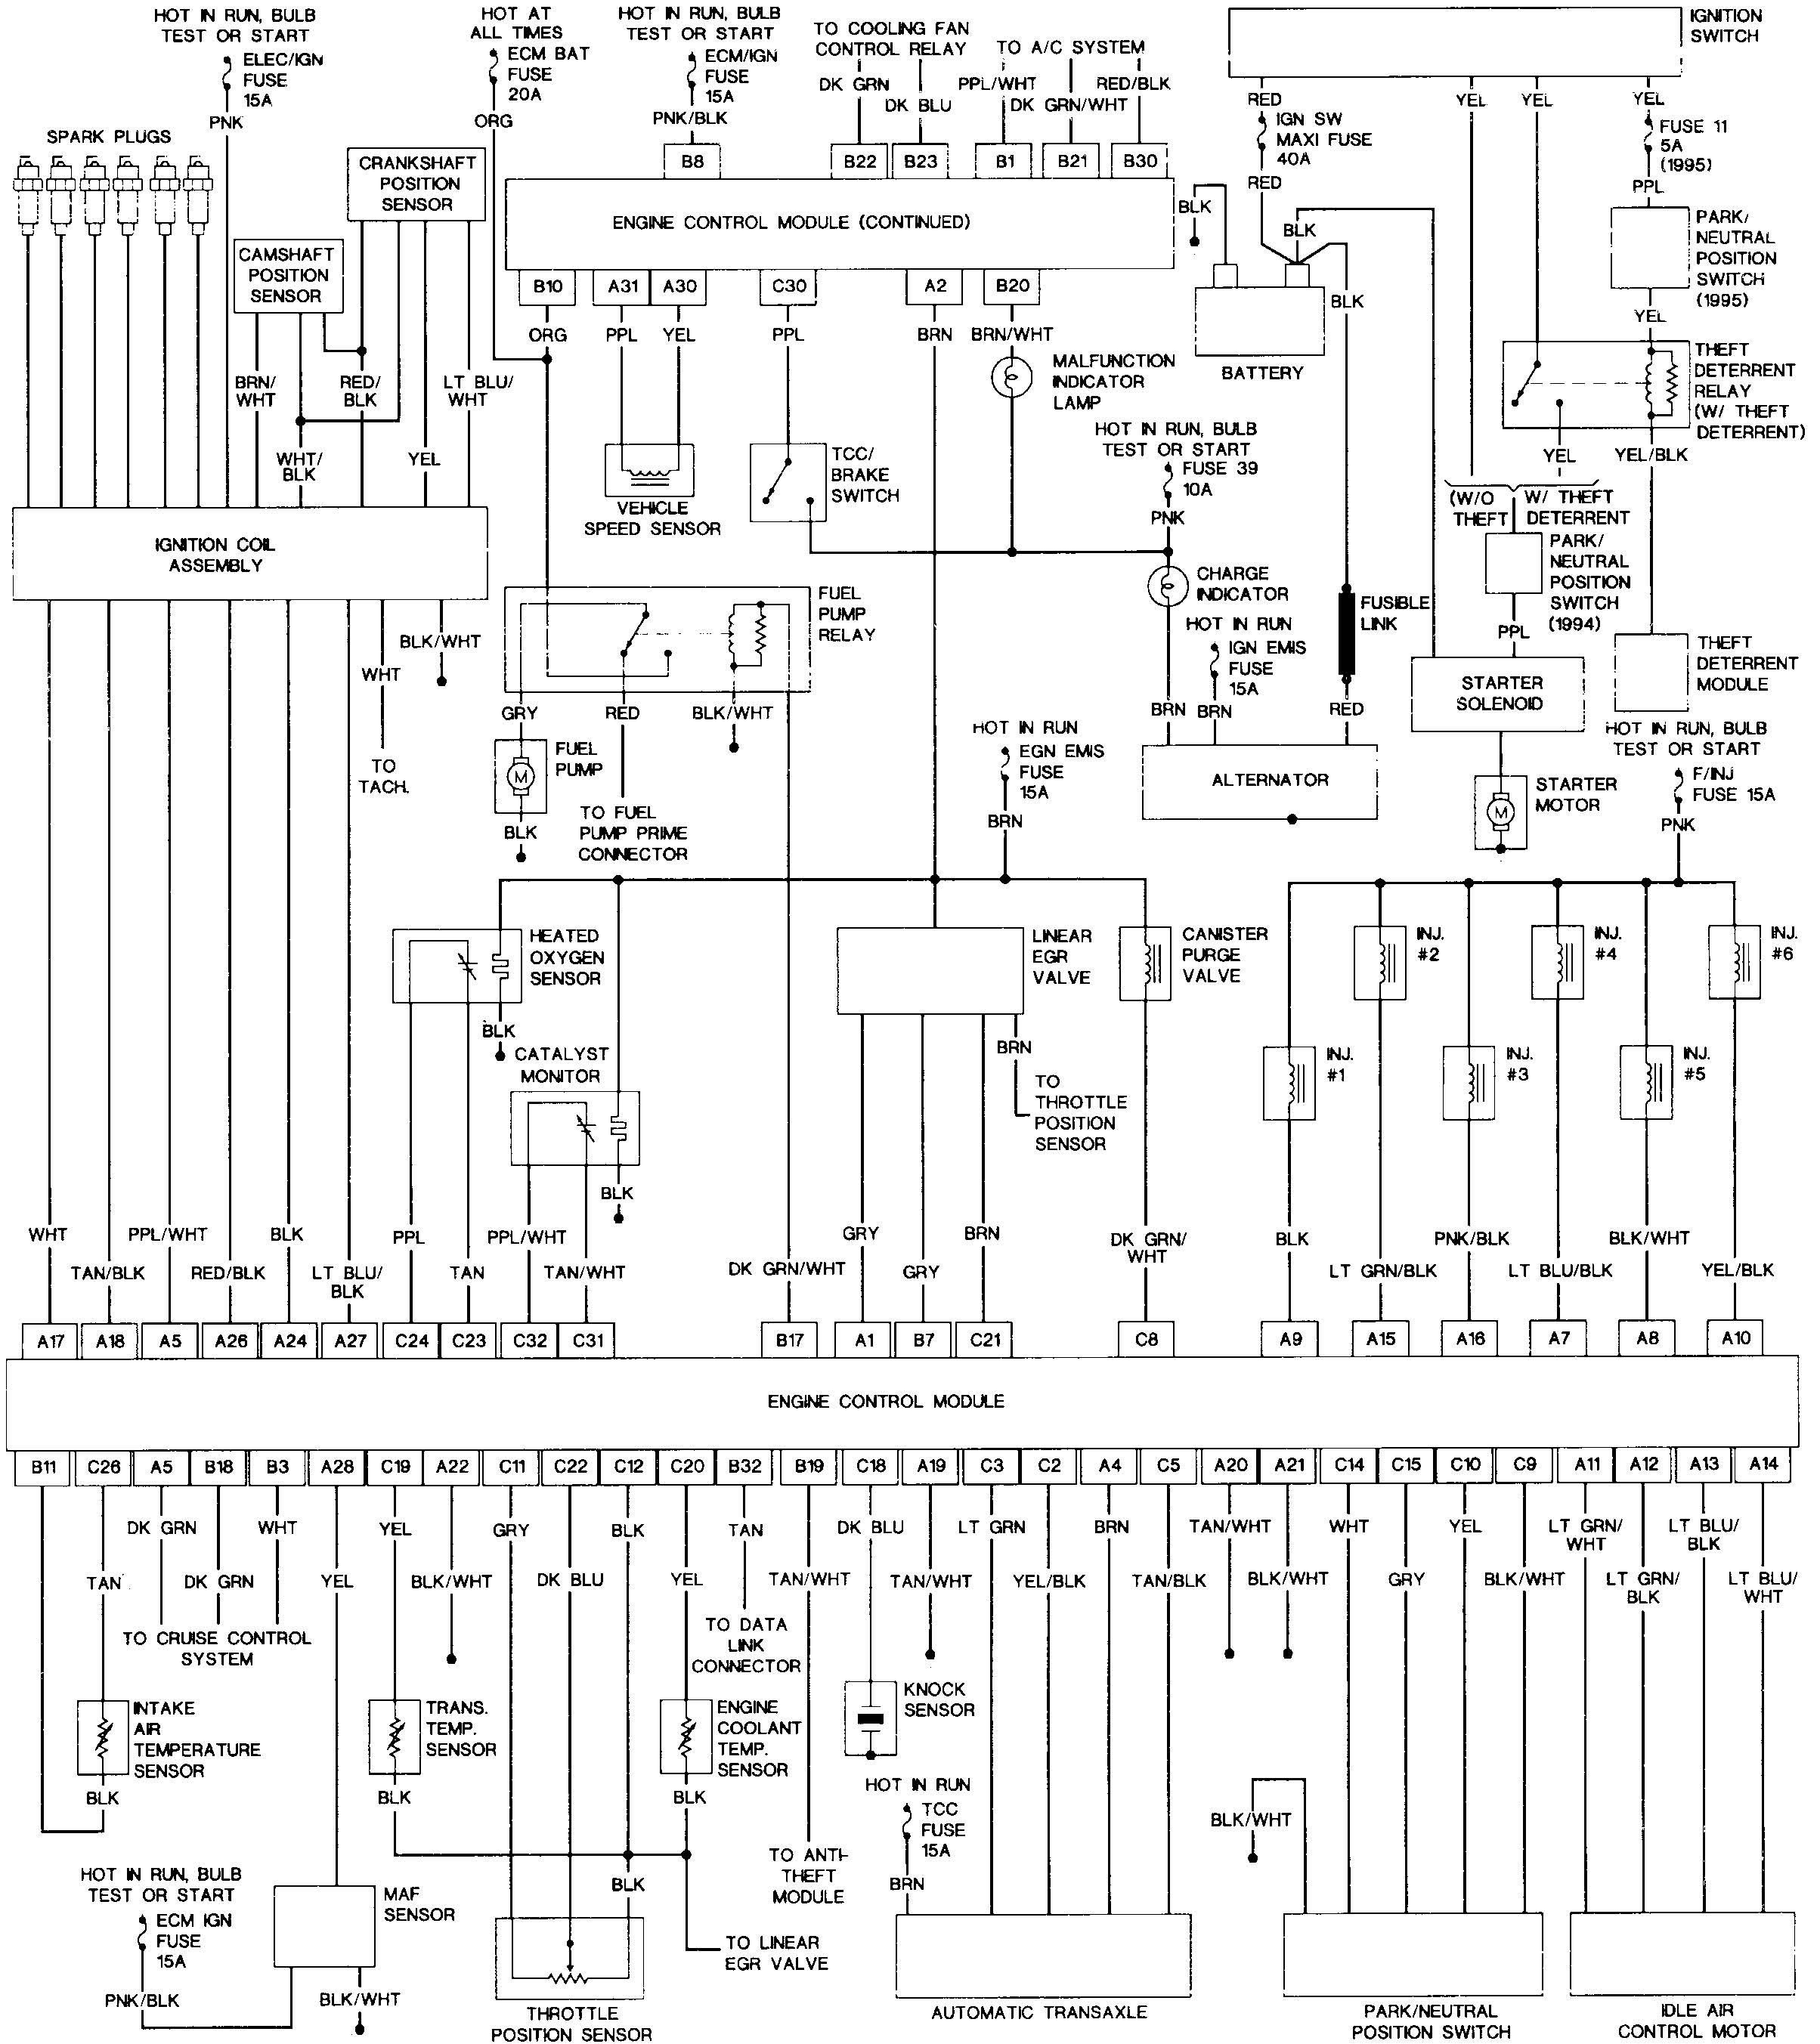 2001 Buick Lesabre Engine Diagram 2012 Buick Enclave Wiring Diagram Worksheet and Wiring Diagram • Of 2001 Buick Lesabre Engine Diagram